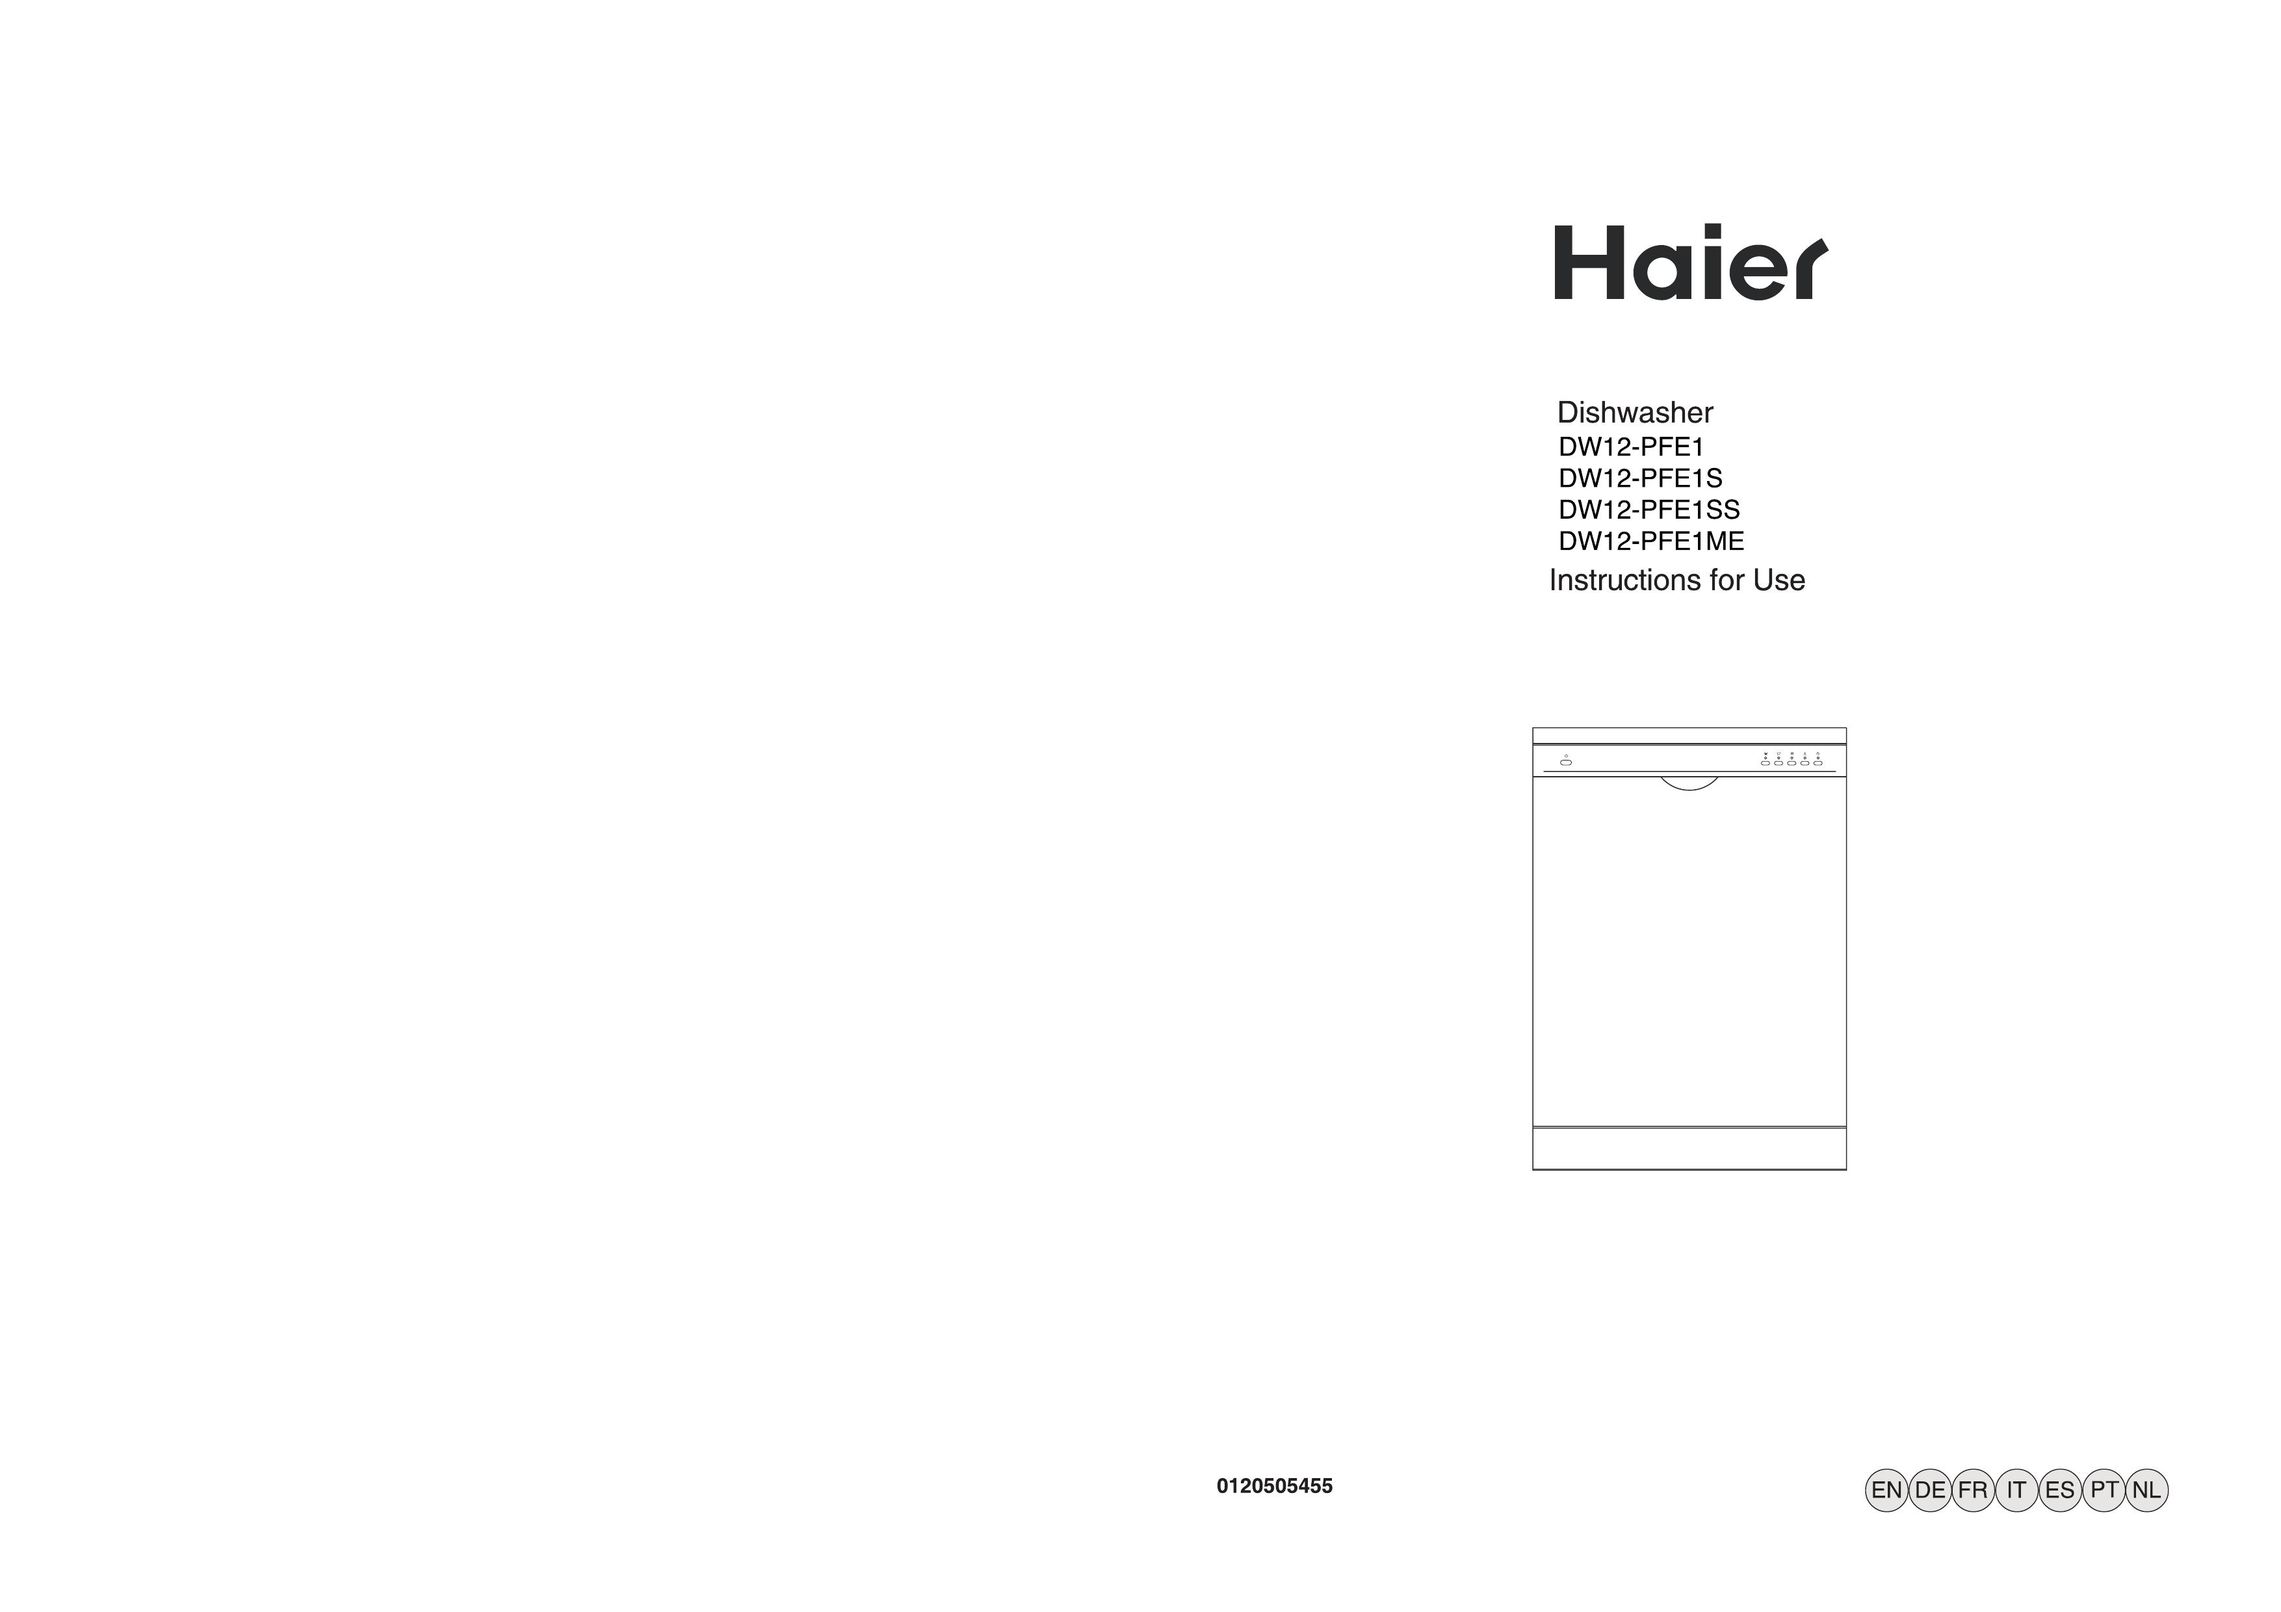 Haier DW12-PE1ME Dishwasher User Manual